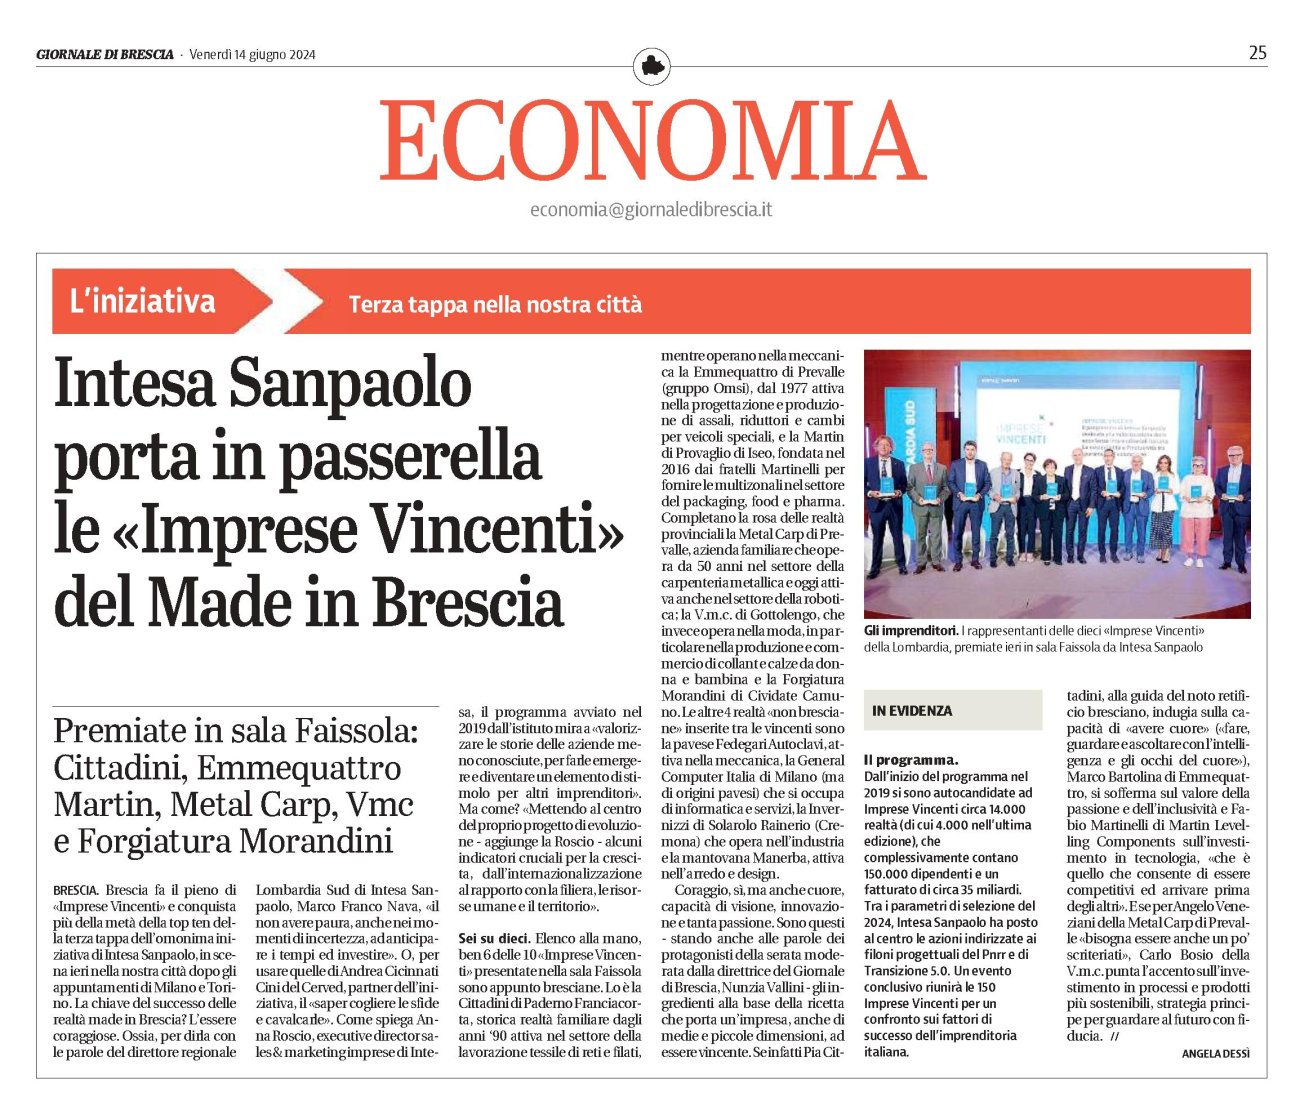 Articolo Giornale di Brescia - Imprese Vincenti